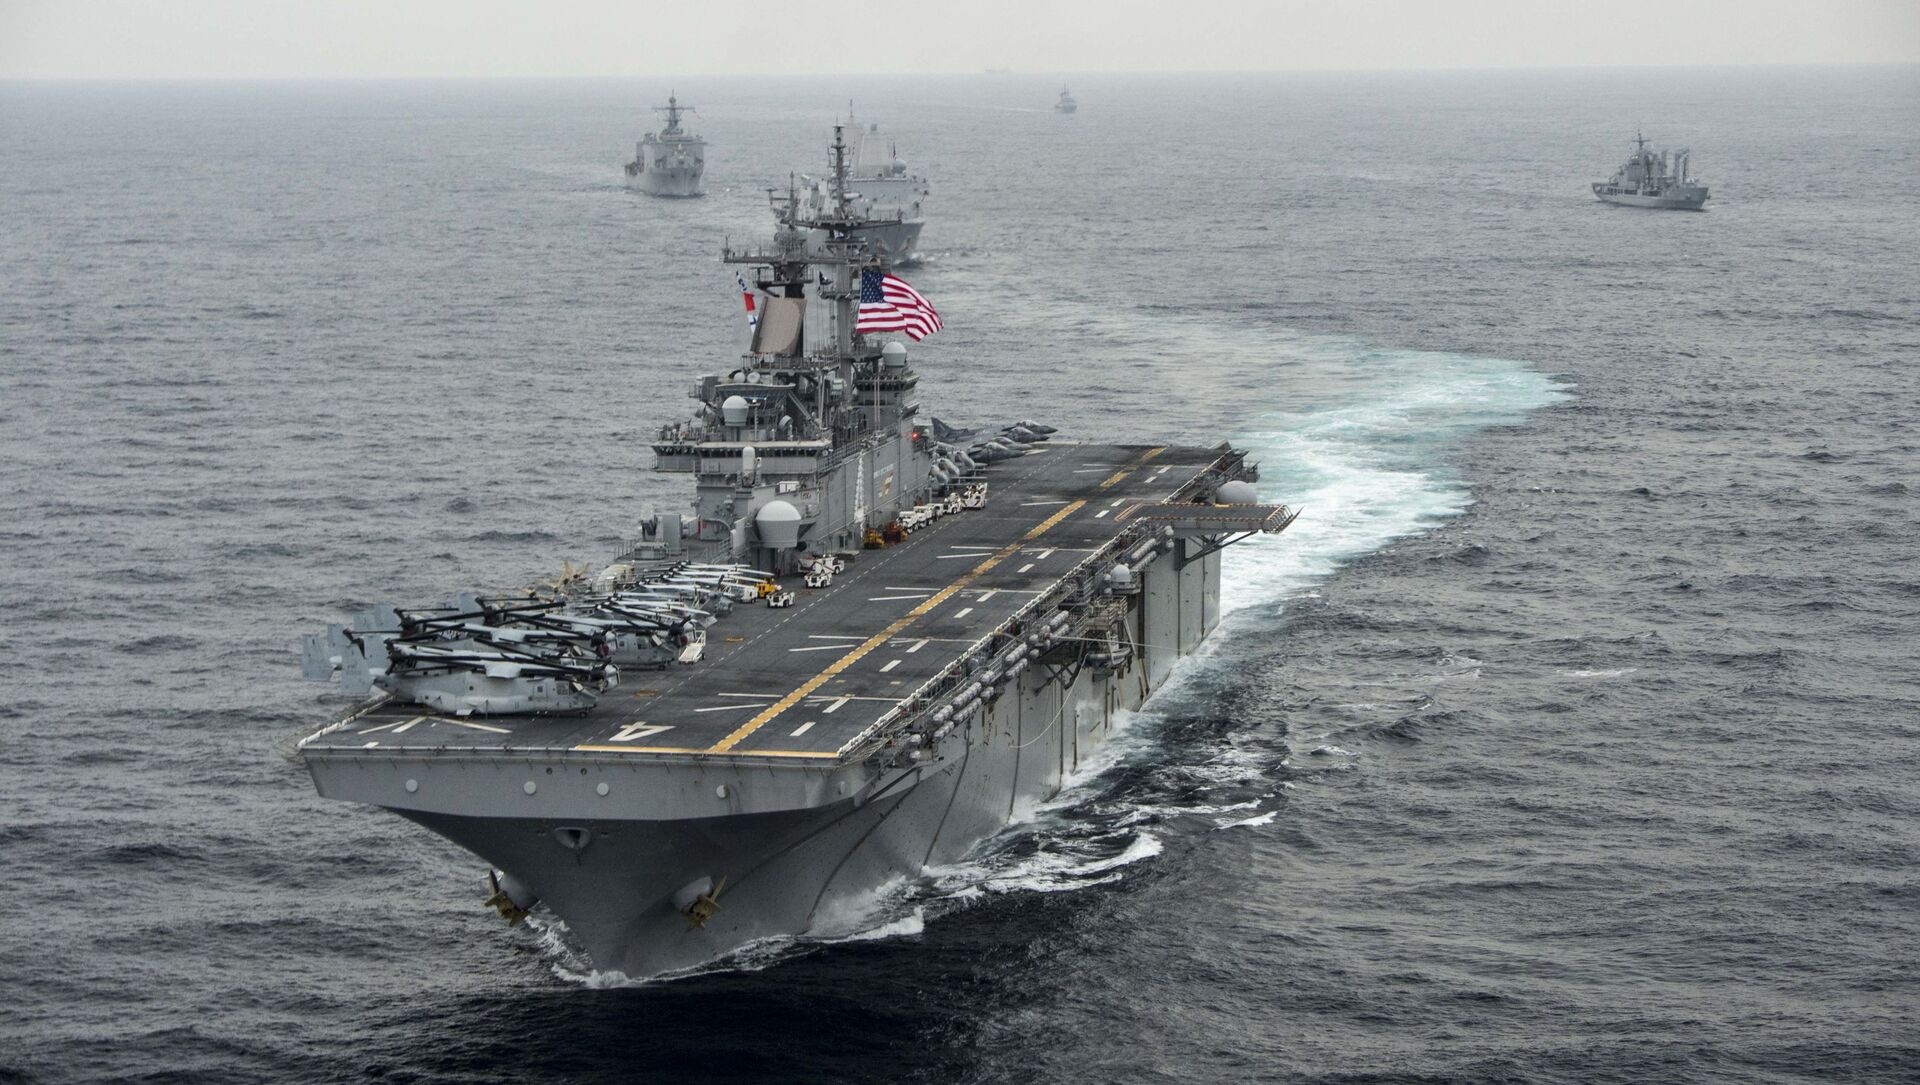 На этой фотографии ВМС США, опубликованной 9 марта 2016 года, показан десантный корабль USS Boxer (LHD 4), когда он проходит через Восточное море во время учений Ssang Yong 2016 8 марта 2016 года. - Sputnik Абхазия, 1920, 04.08.2021